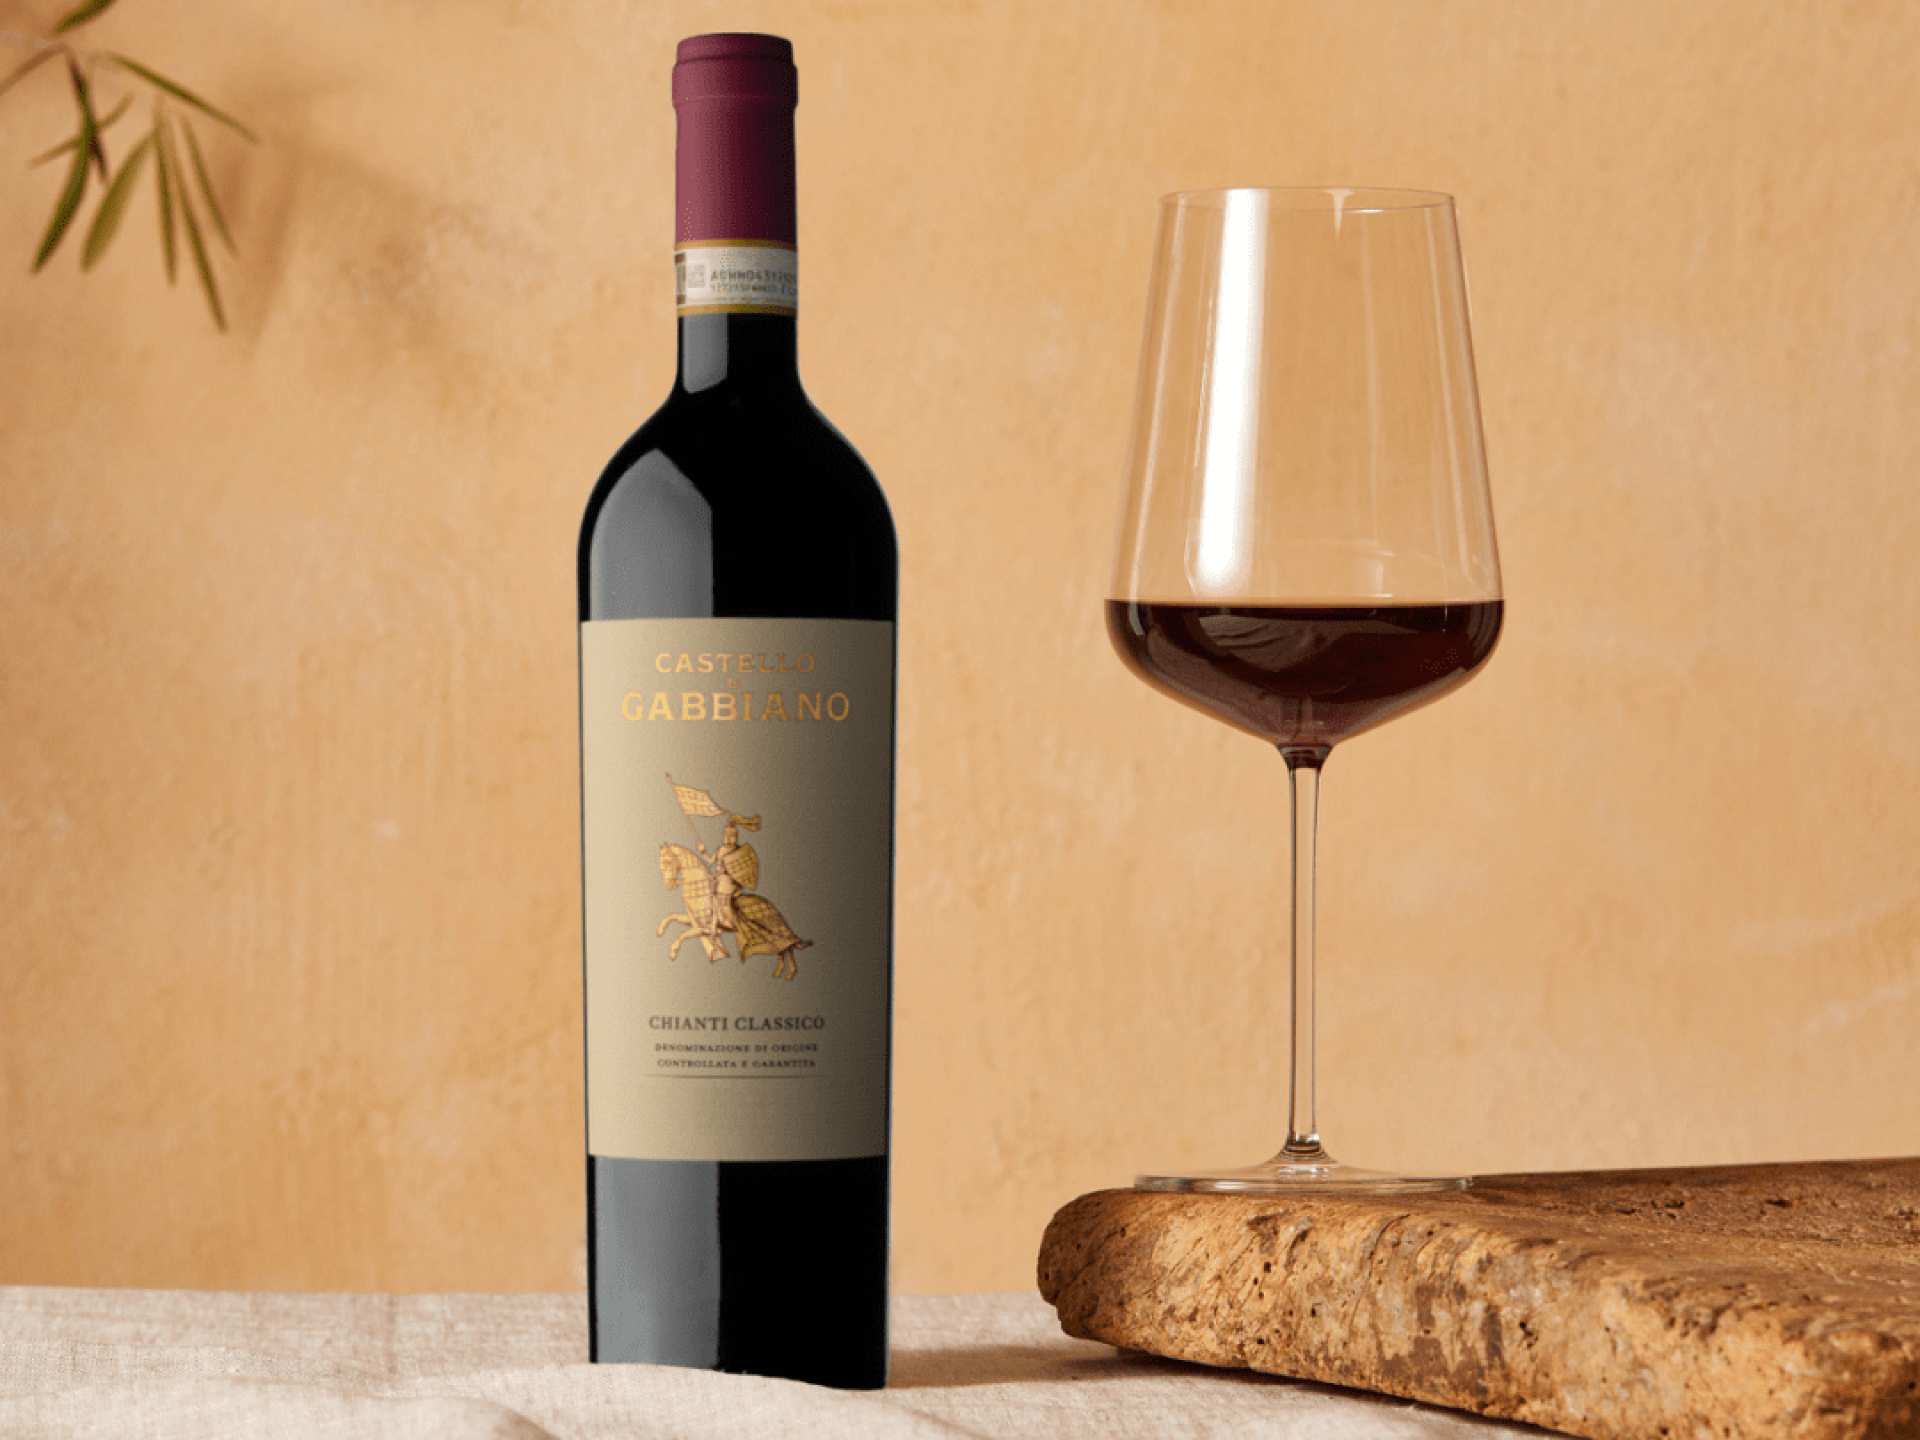 A bottle of Castello di Gabbiano Chianti Classico with a glass of wine